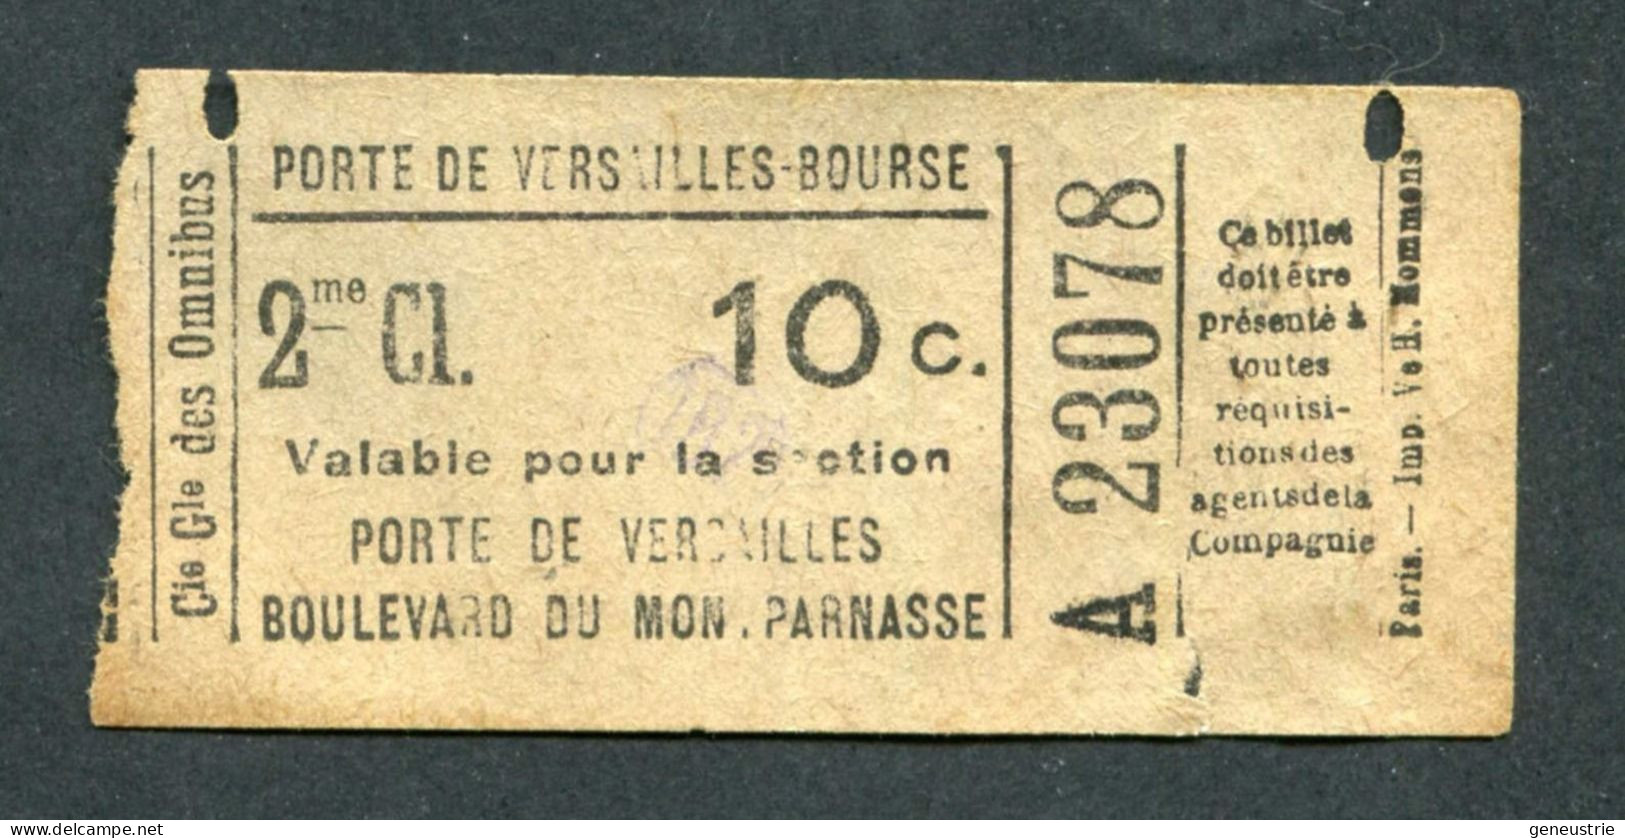 Ticket De Tramways - Compagnie Générale Des Omnibus (CGO) 2e Classe 10c - Paris" Tramway - Porte De Versailles - Europe